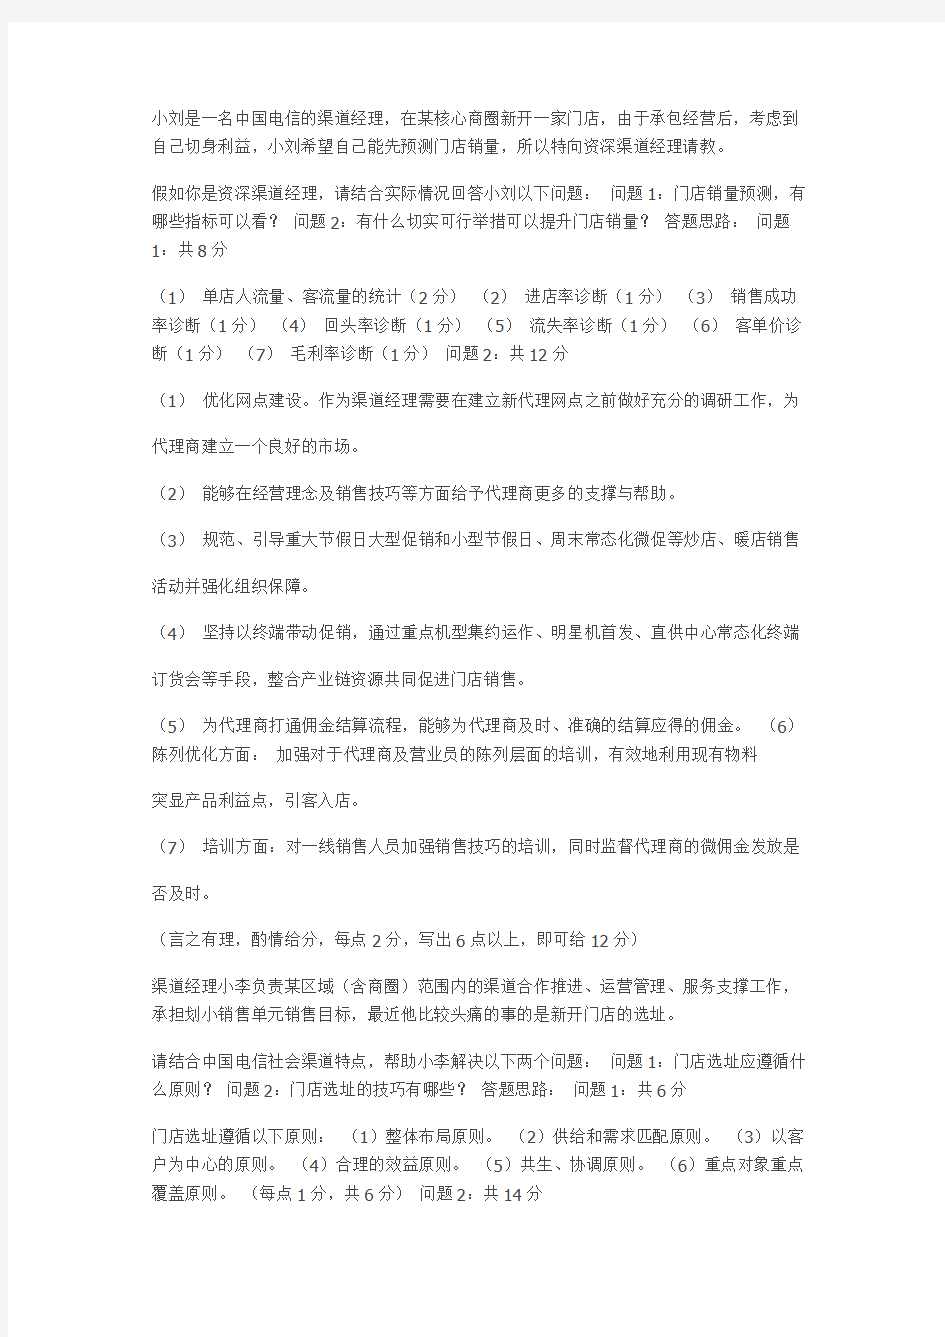 中国电信渠道经理技能认证(四级)实操考试题目及评分